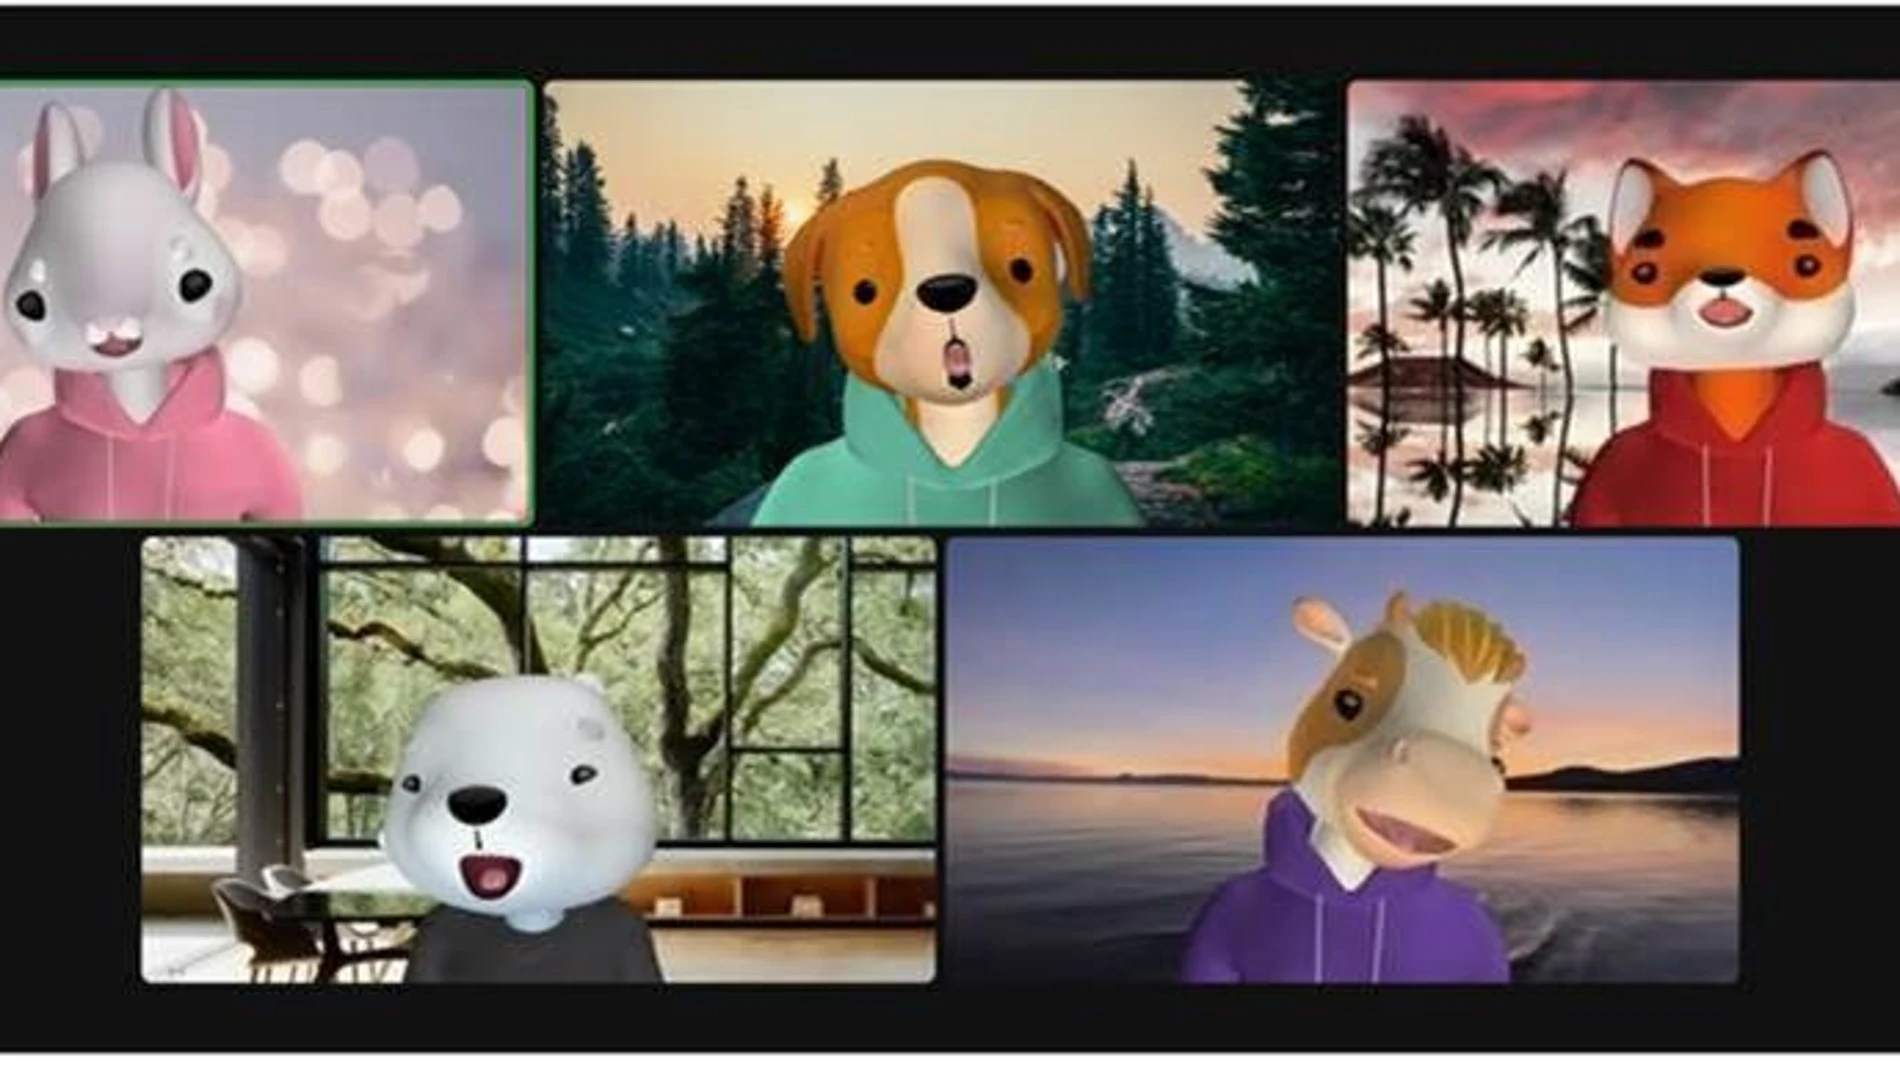 Zoom introduce avatares de animales en 3D en la plataforma.